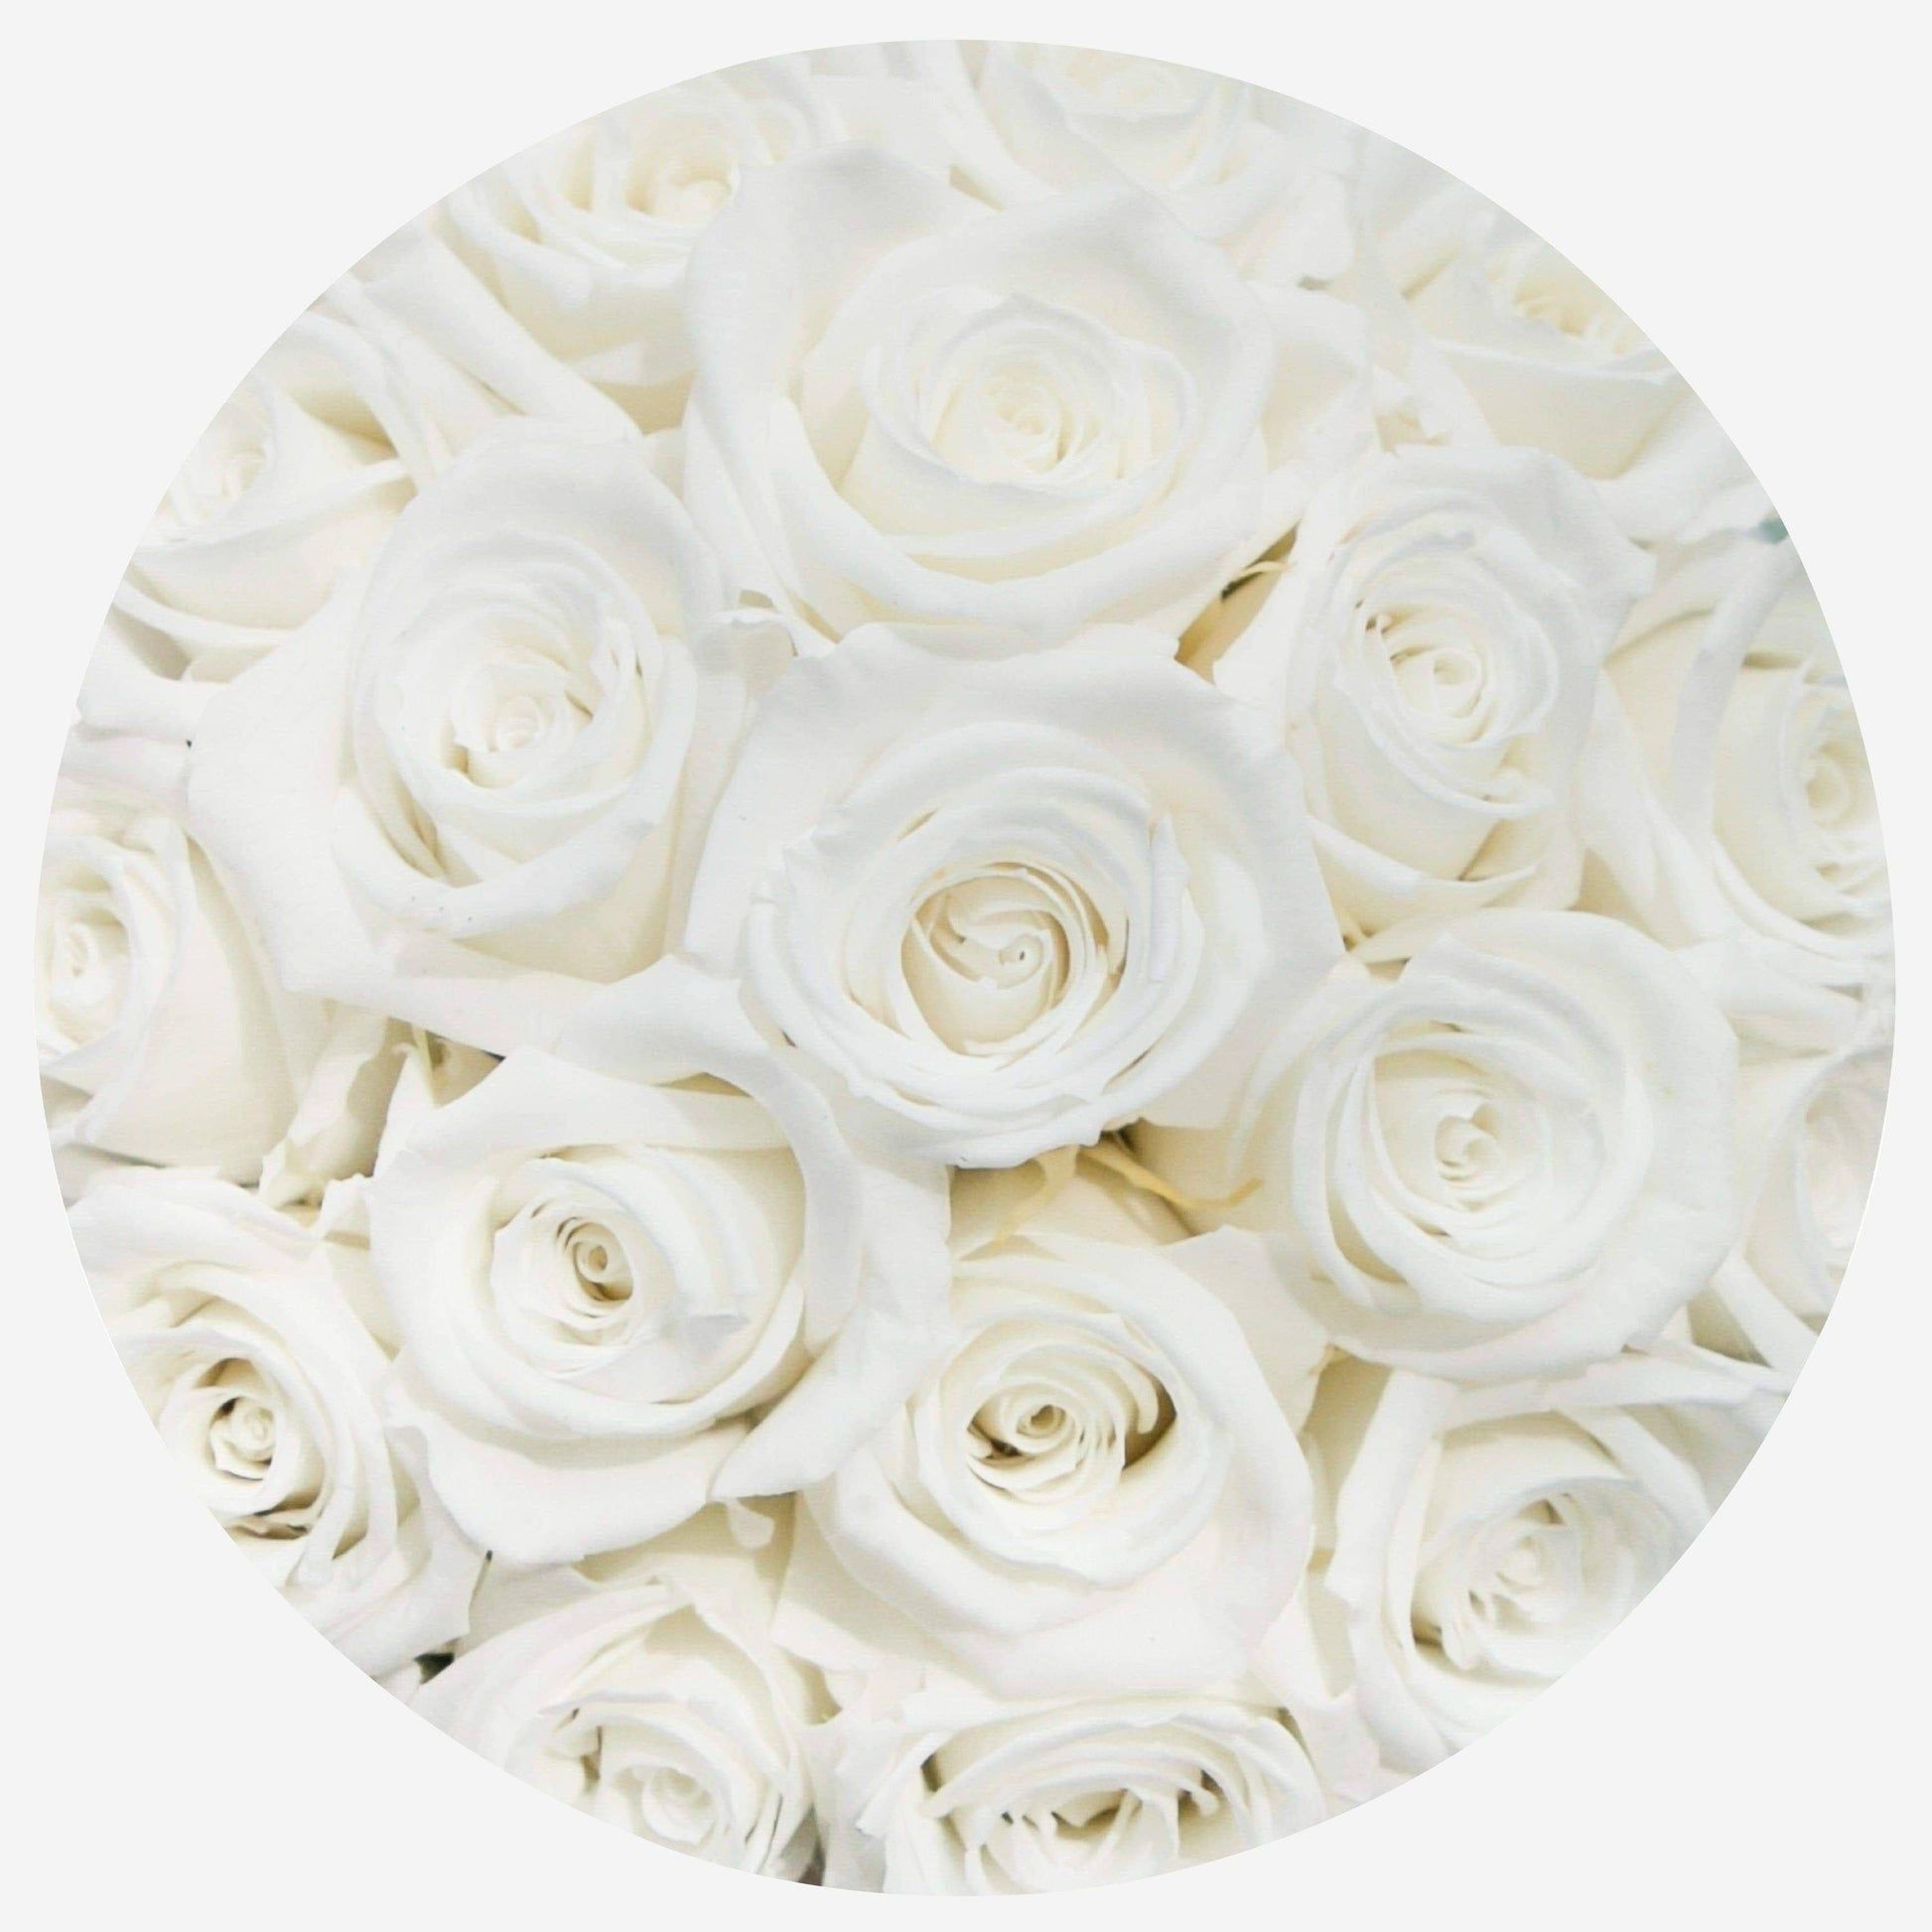  Weiße Rosen Hintergrundbild 1946x1946. Basic Box. Weiß. Weiße Rosen. The Million Roses